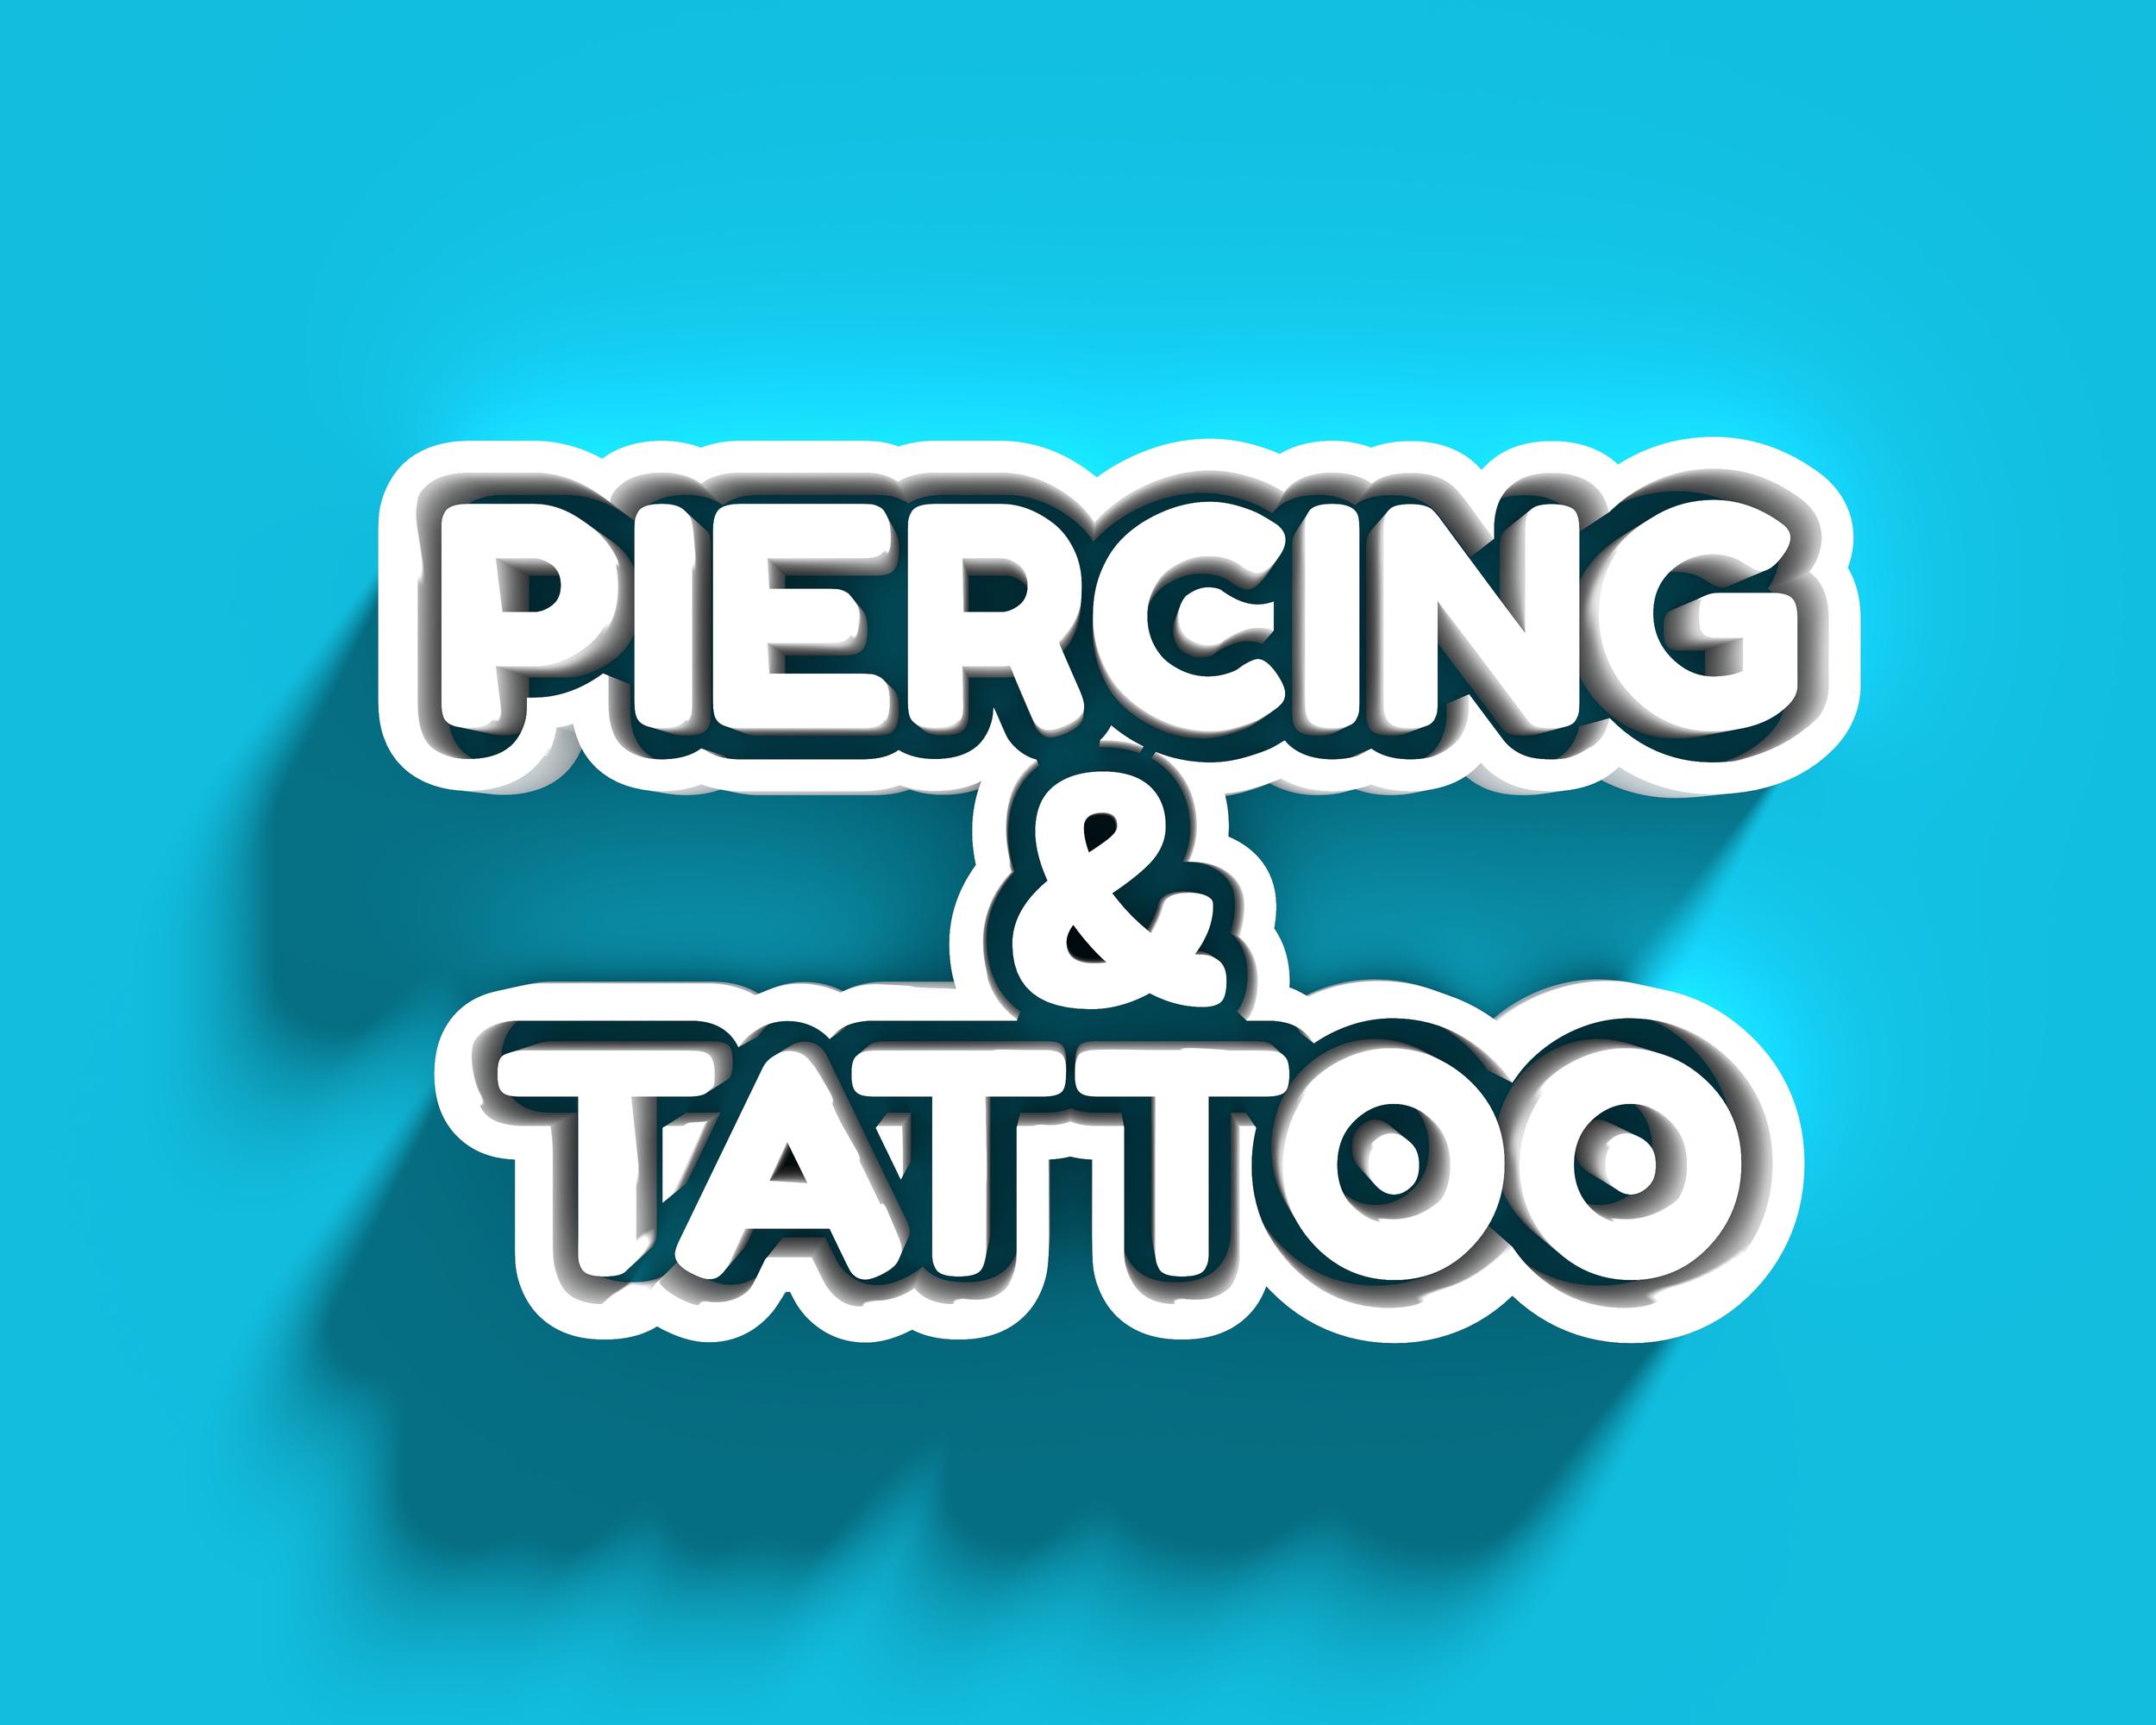 Platinum Tattoos & Piercings